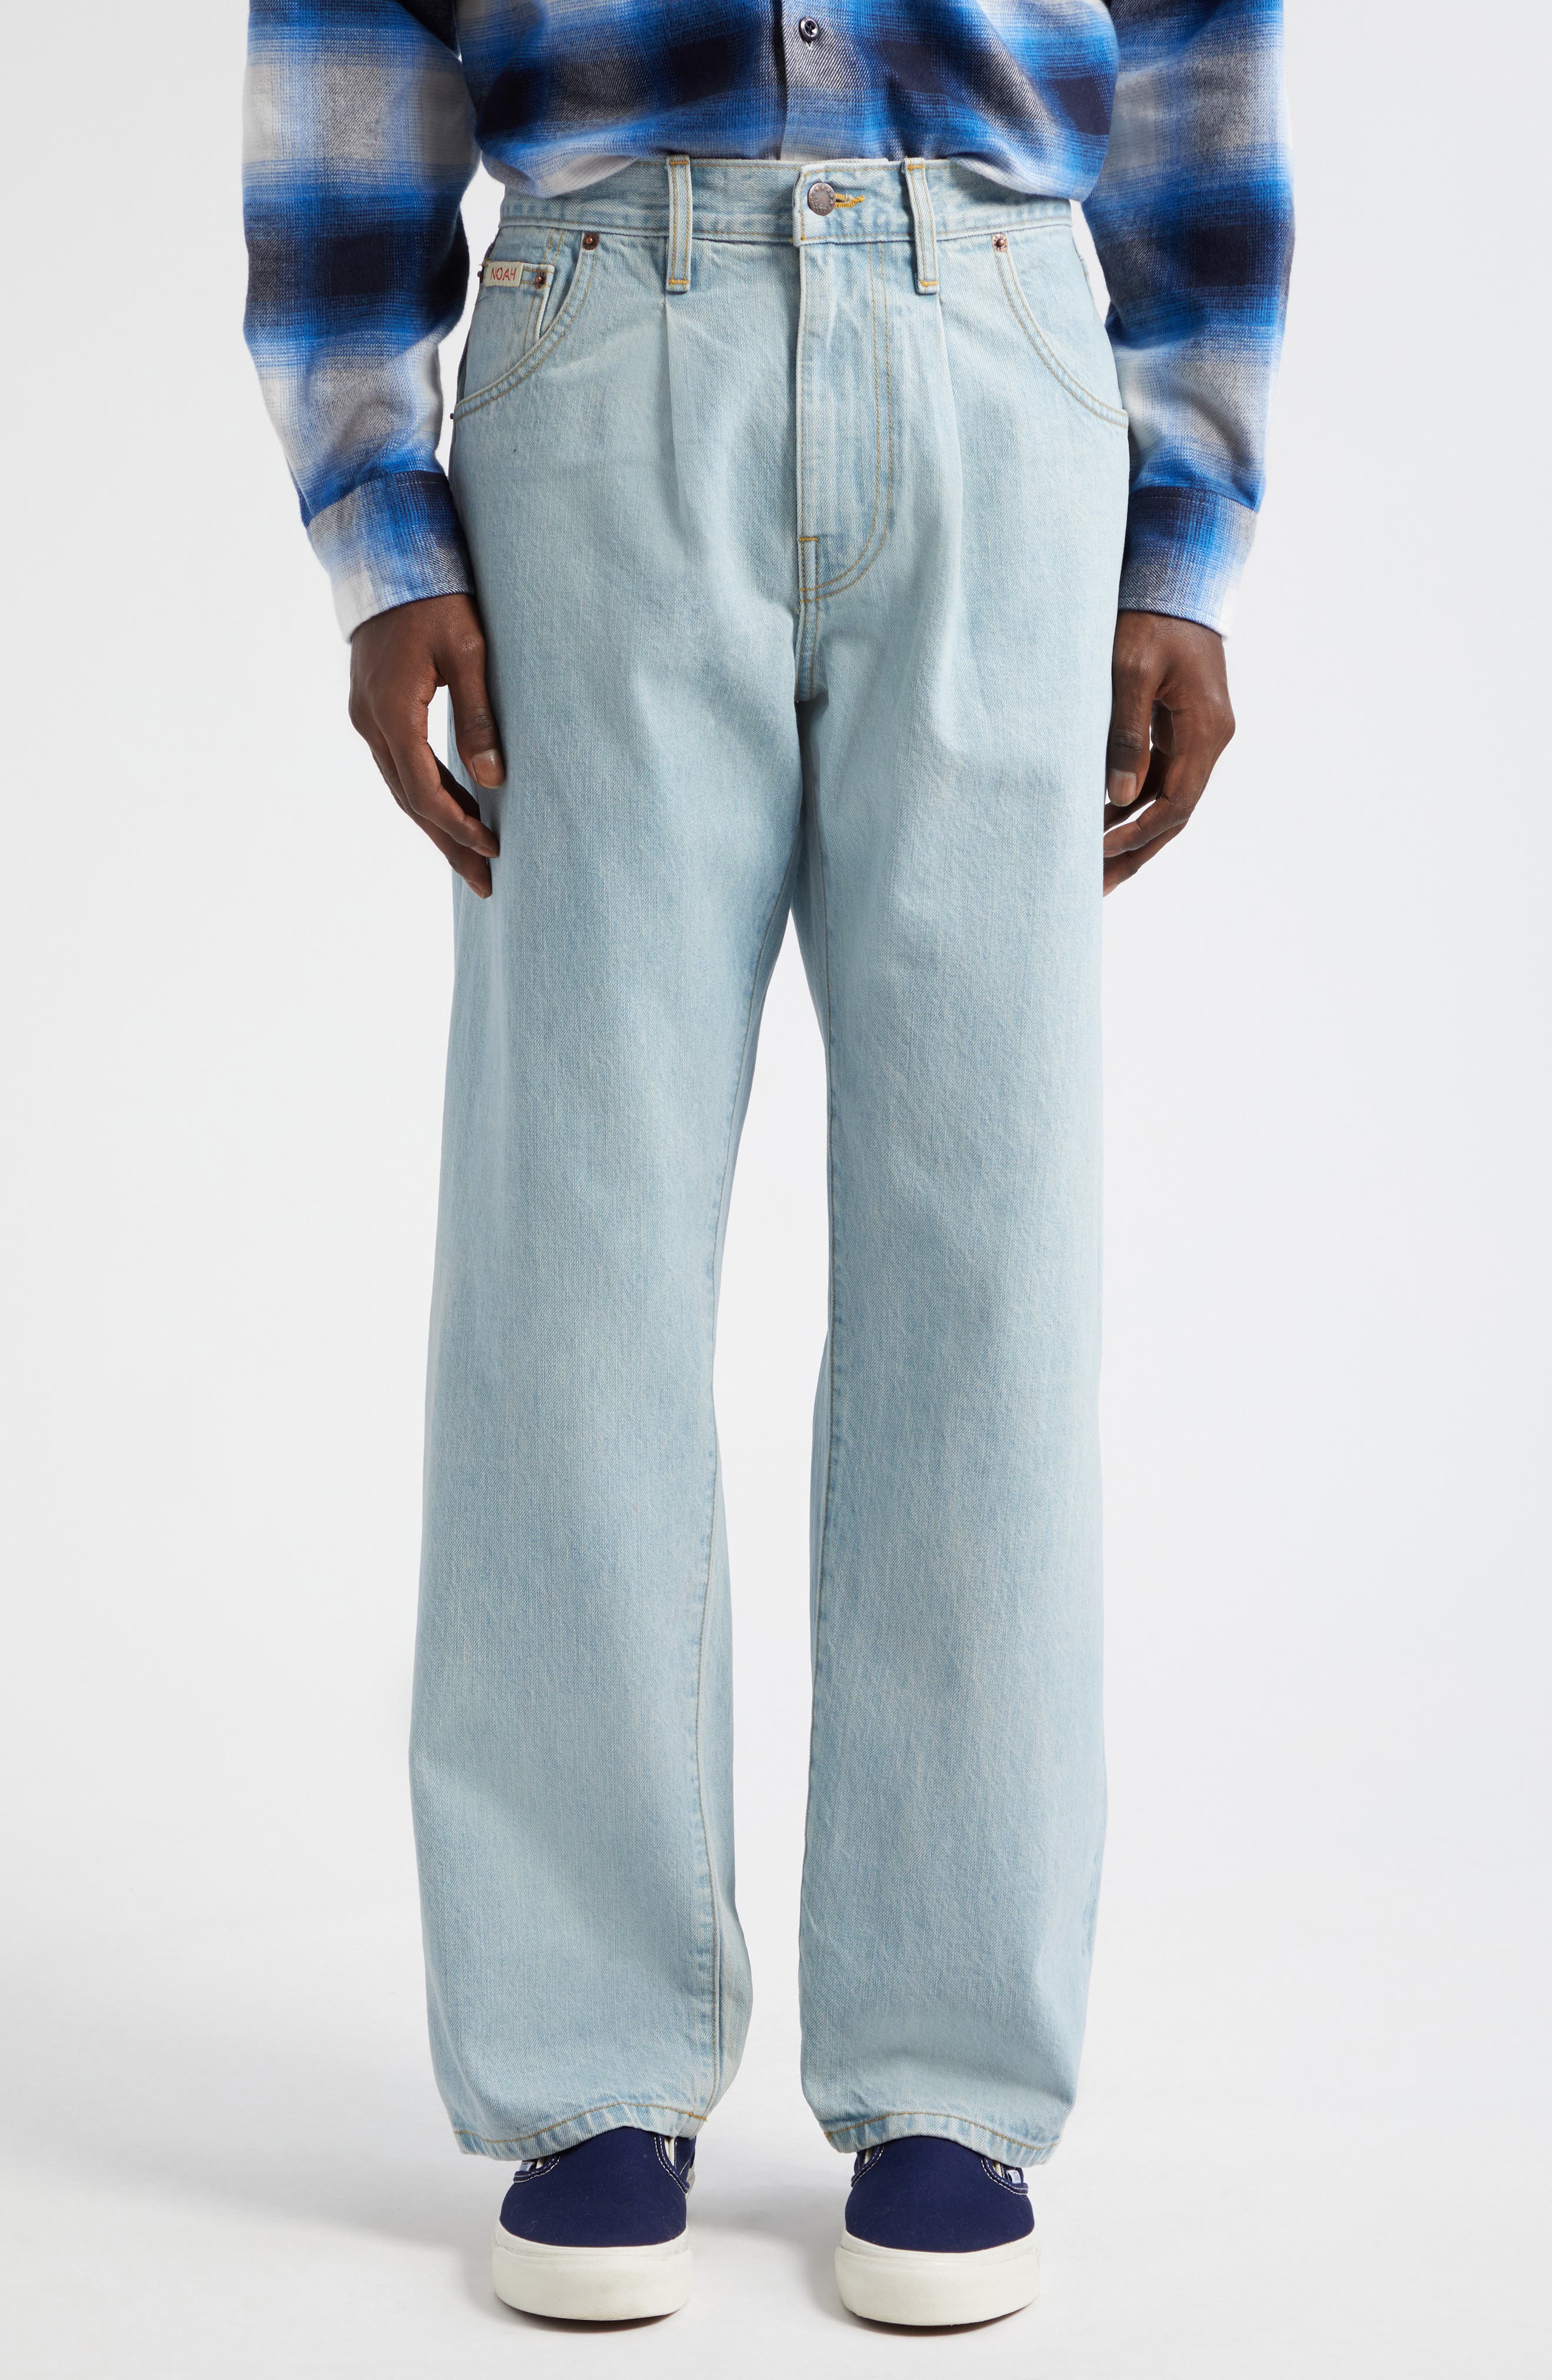 【即納セール】Noah Pleated Jeans パンツ